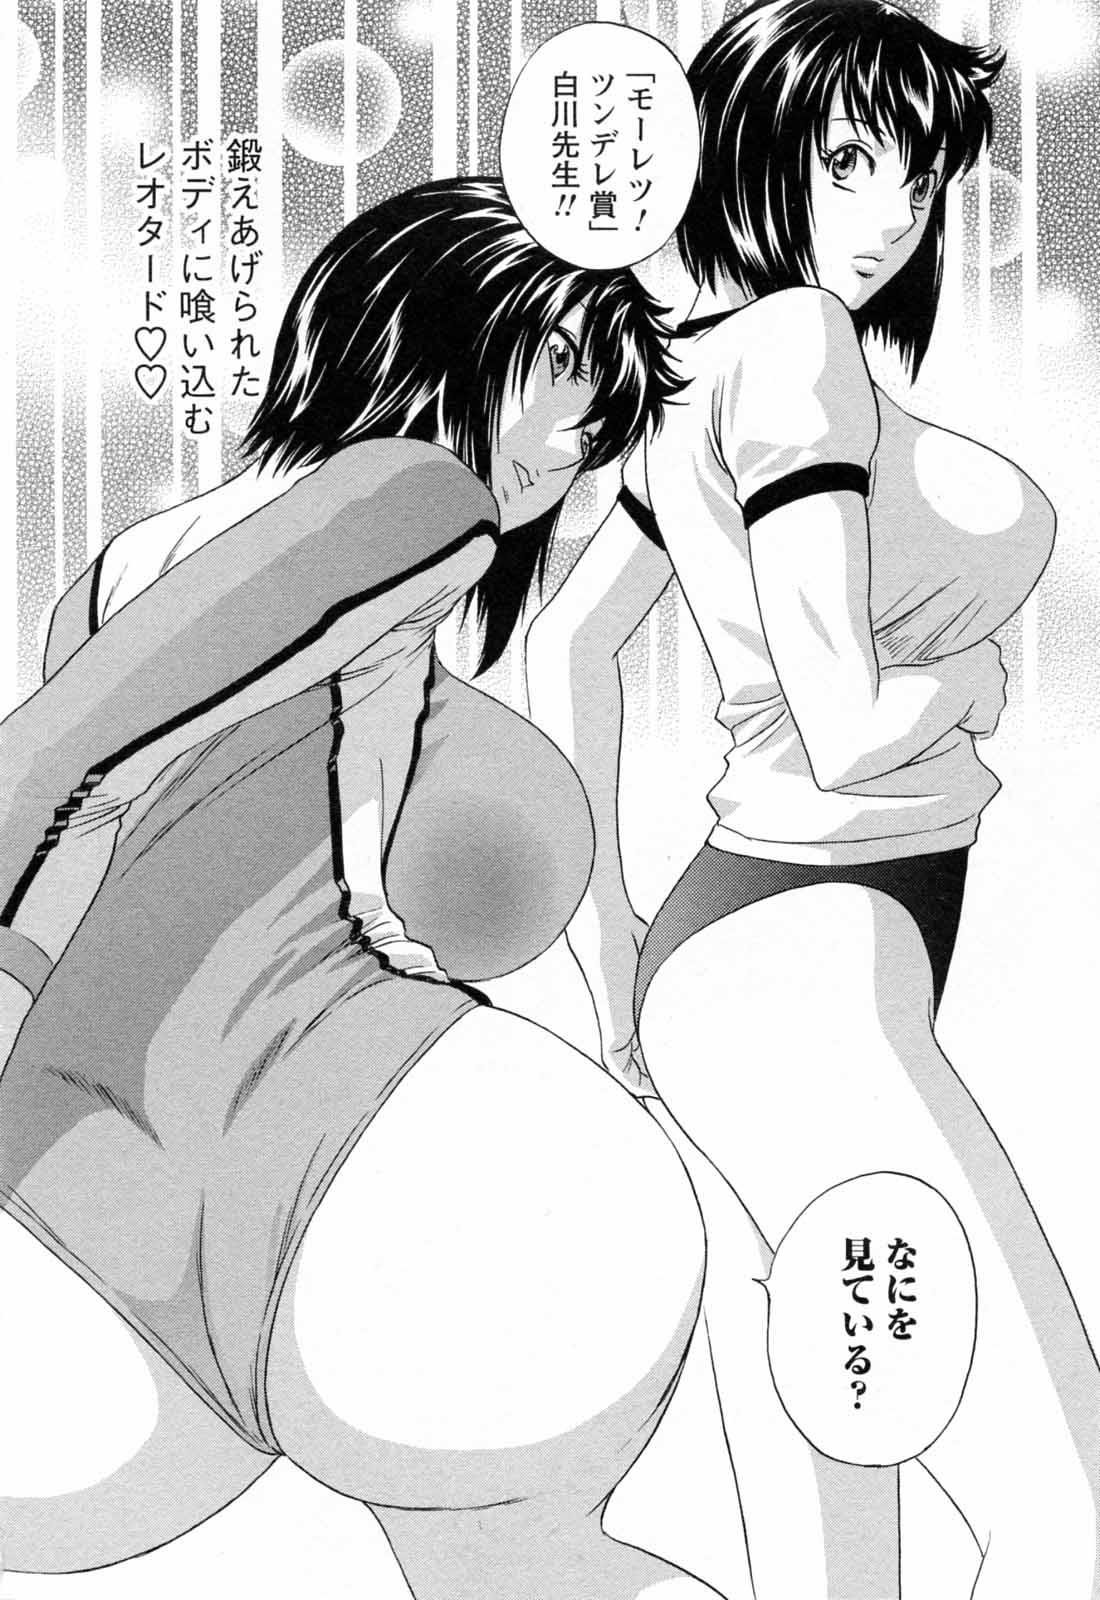 [Hidemaru] Mo-Retsu! Boin Sensei (Boing Boing Teacher) Vol.5 187